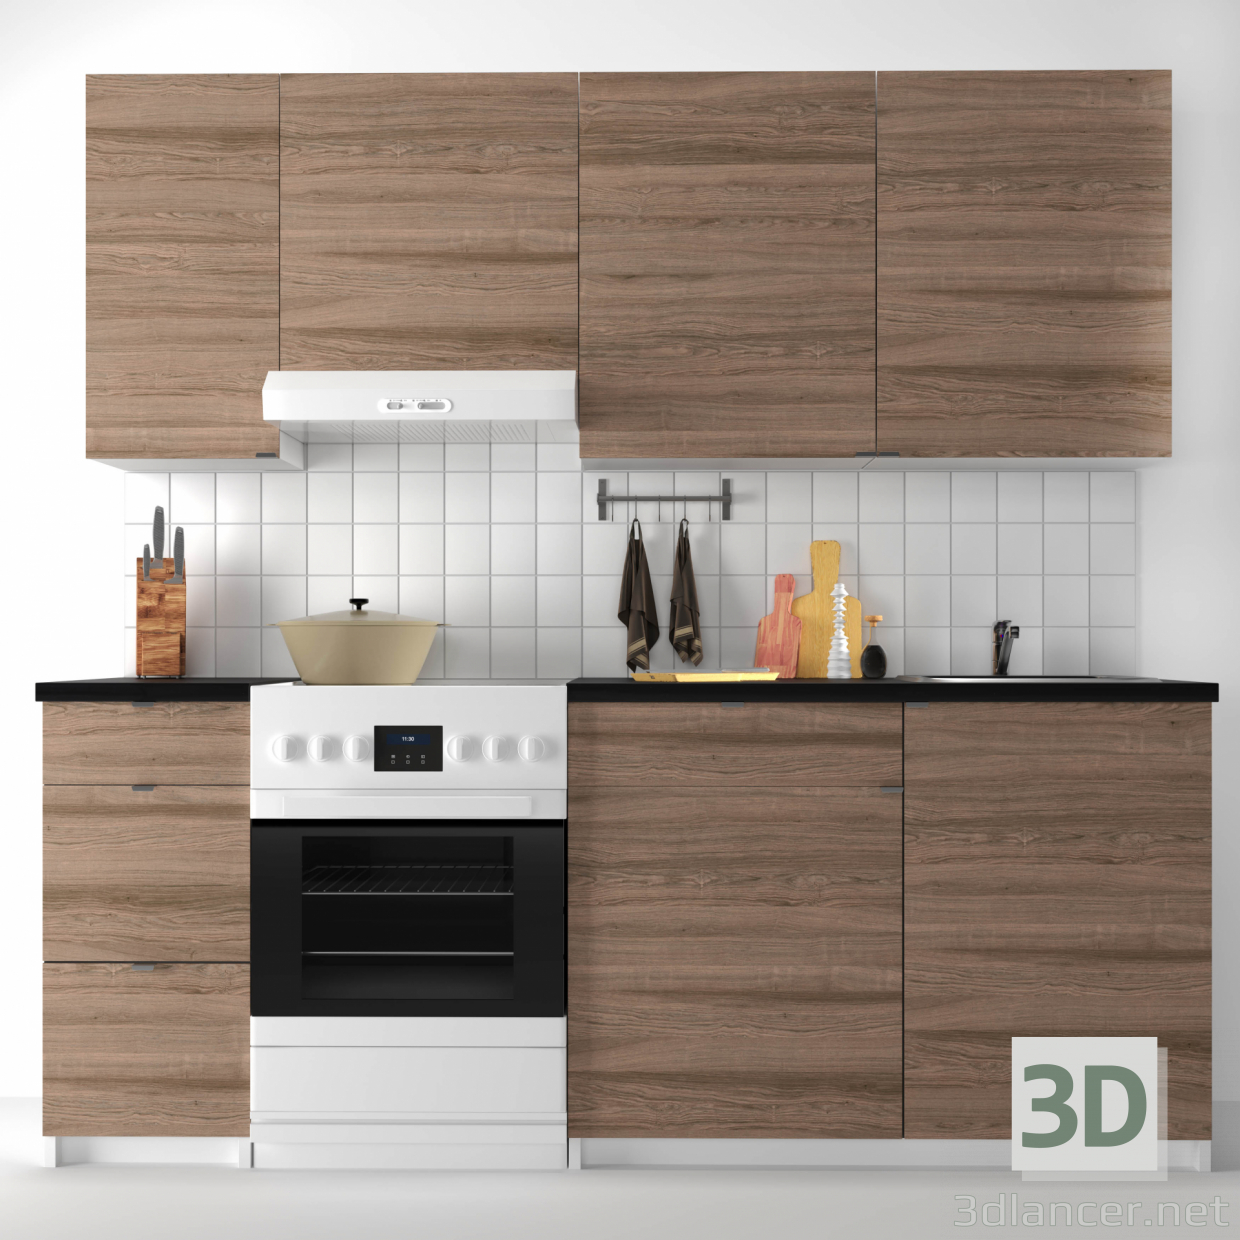 3D Modüler mutfak IKEA KOHOKHULT modeli satın - render